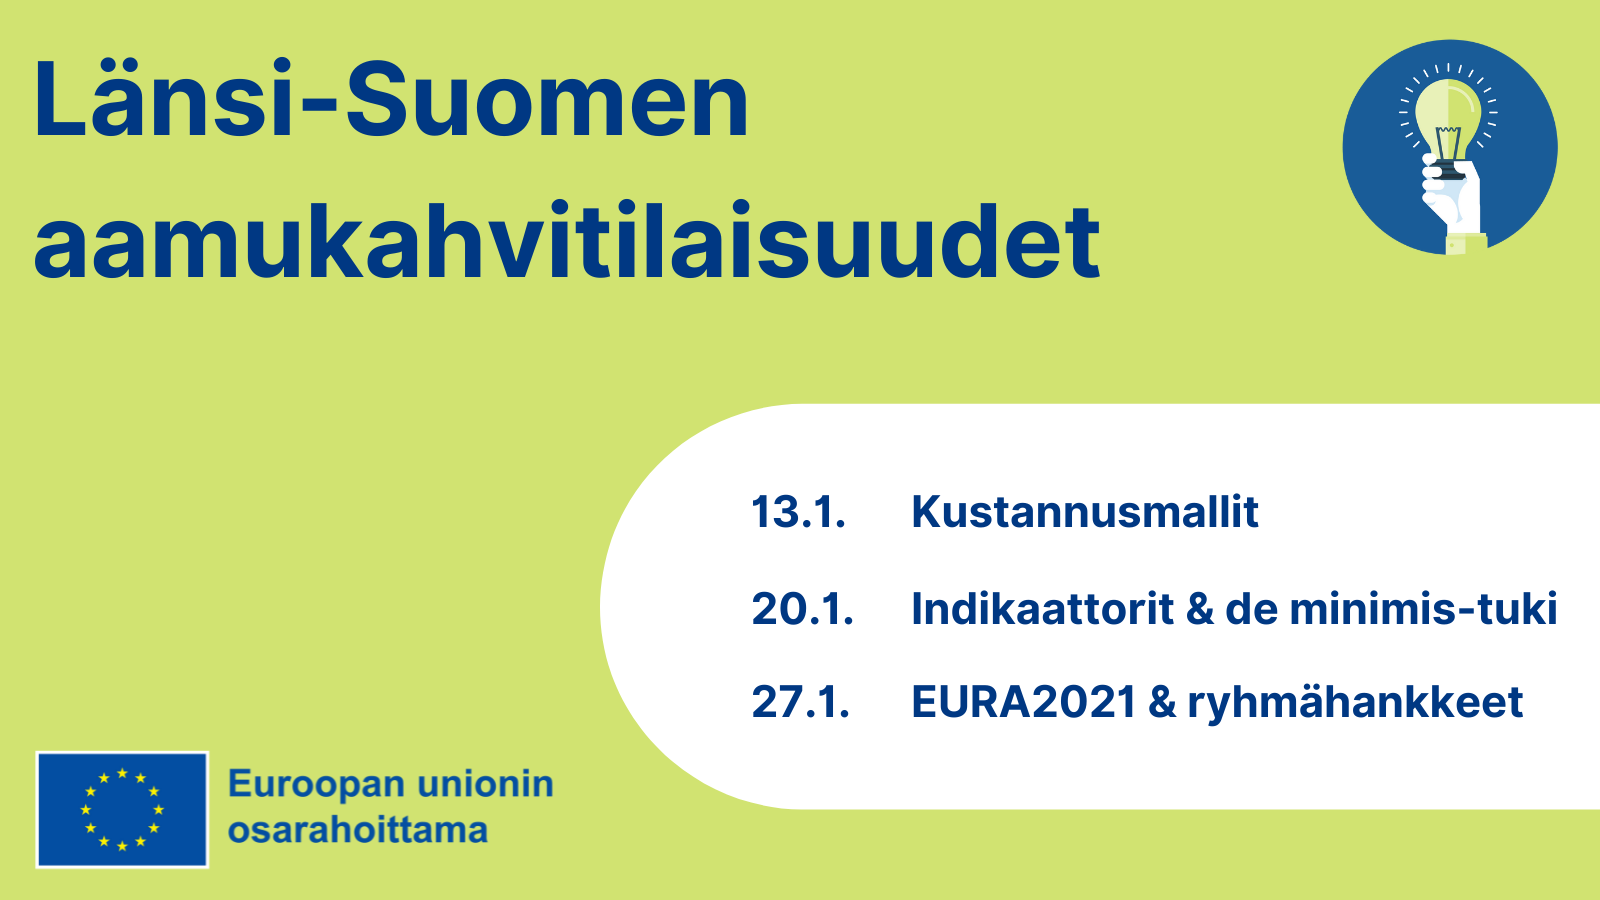 Uudistuva ja osaava Suomi 2021-2027: Länsi-Suomen Aamukahvitilaisuudet. Samat teemat ja ajankohdat kuin ylläolevassa tekstissä. EU:n lippulogo tekstillä Euroopan unionin osarahoittama.